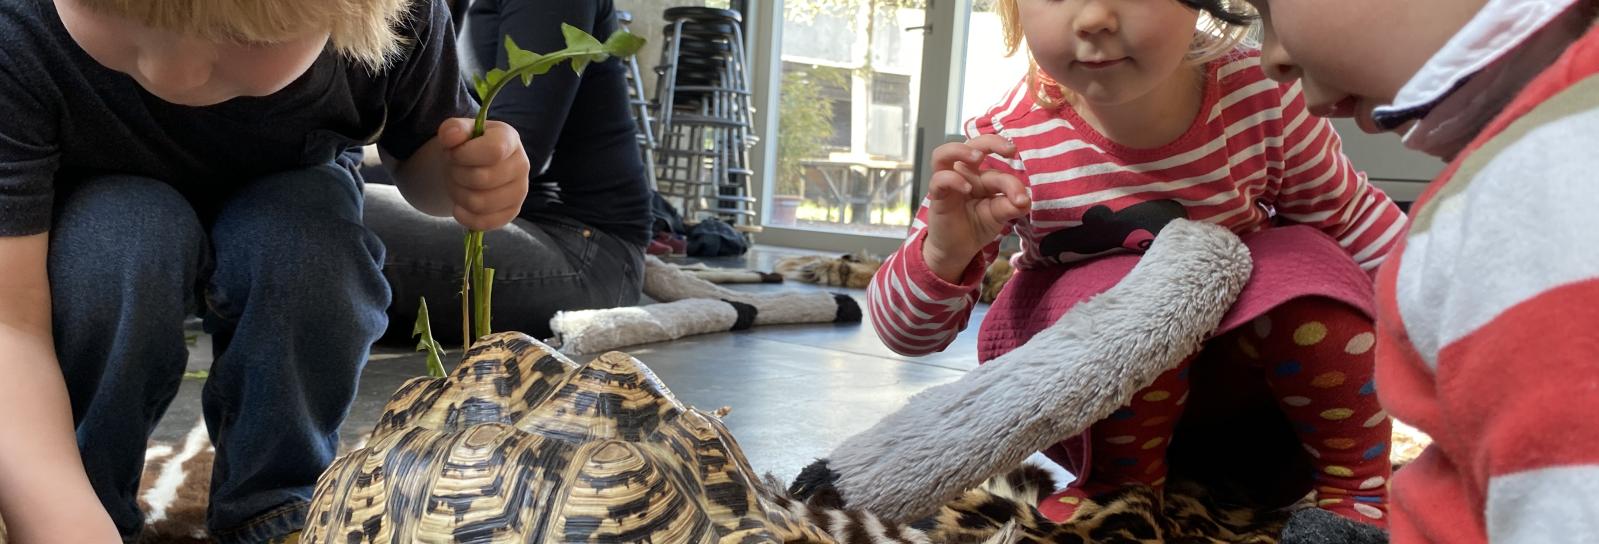 Børnene fodrer skildpadderne